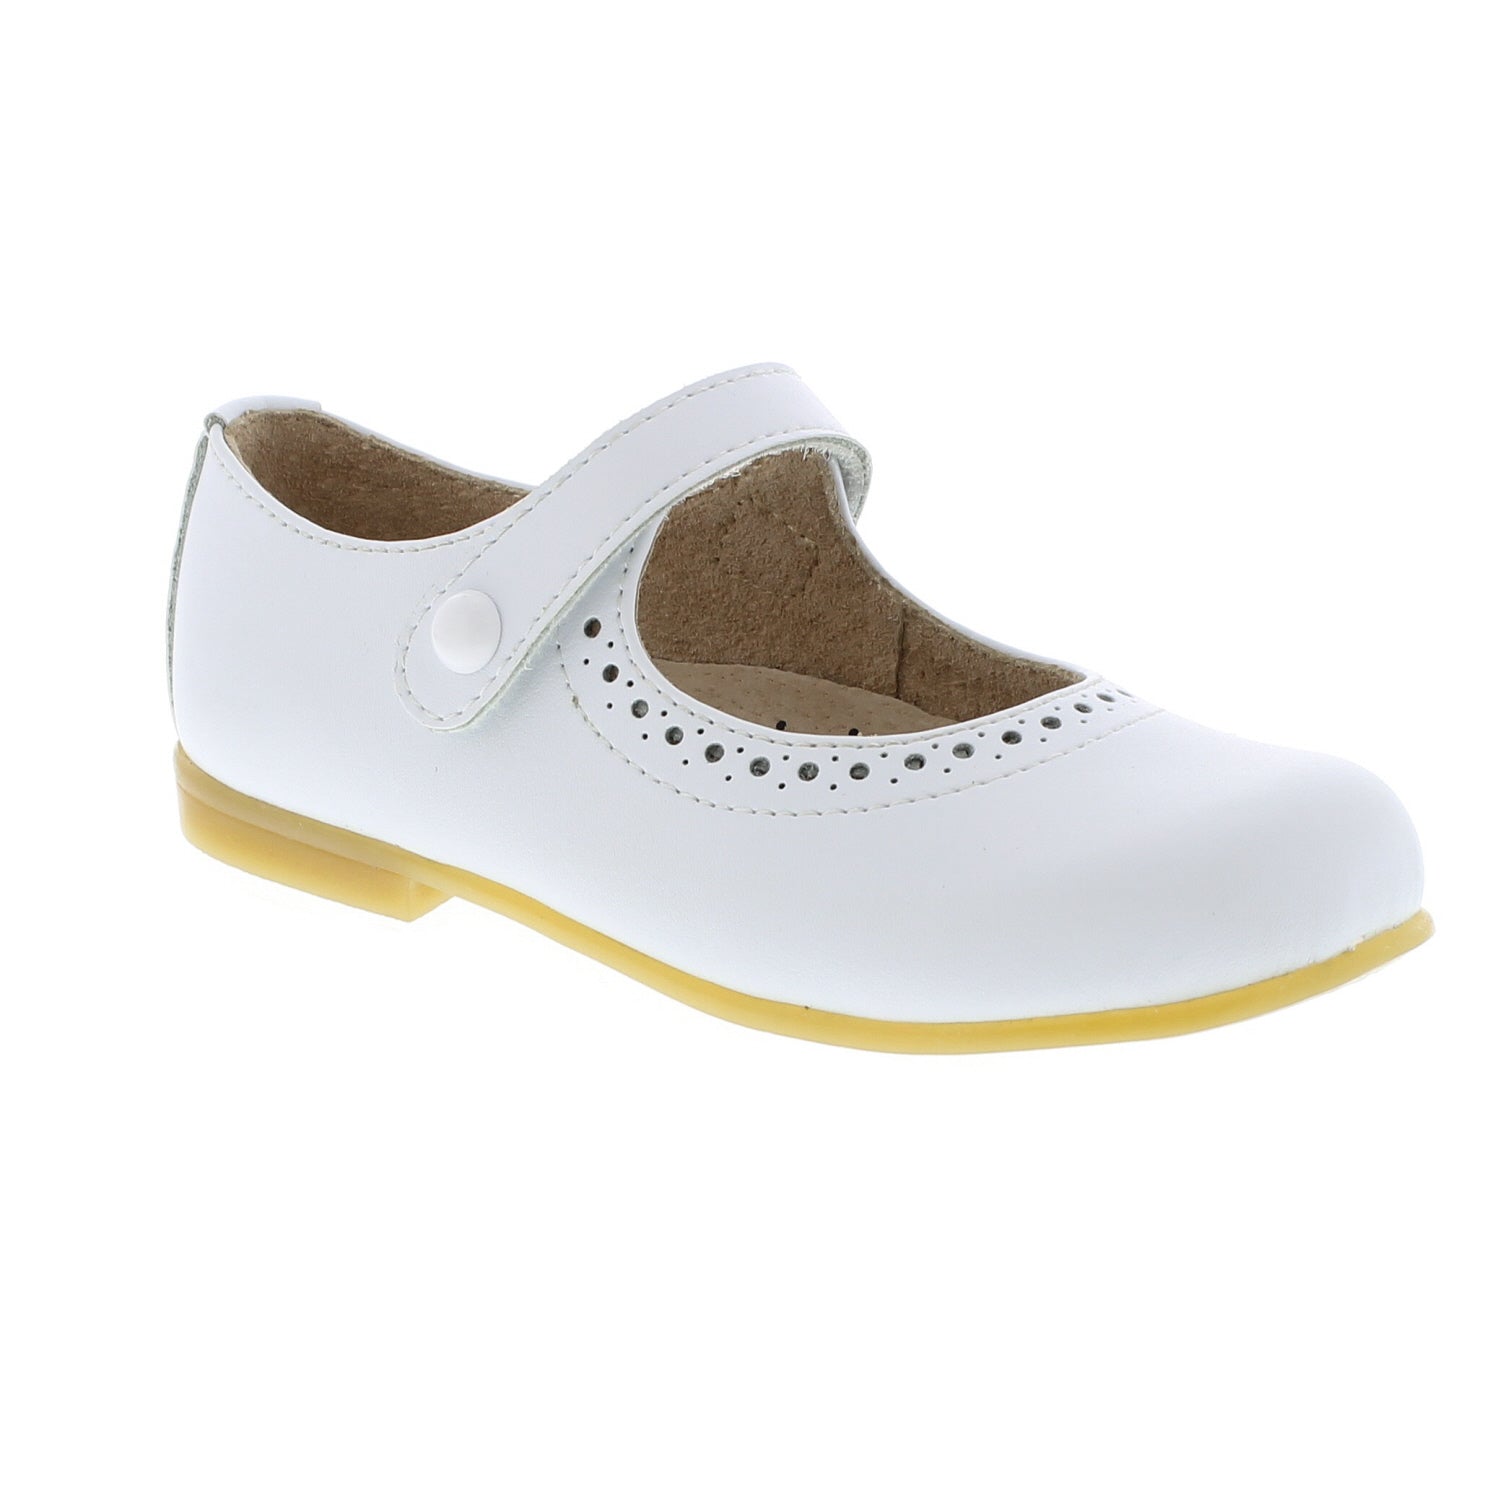 Emma Mary Jane Shoe - White Leather